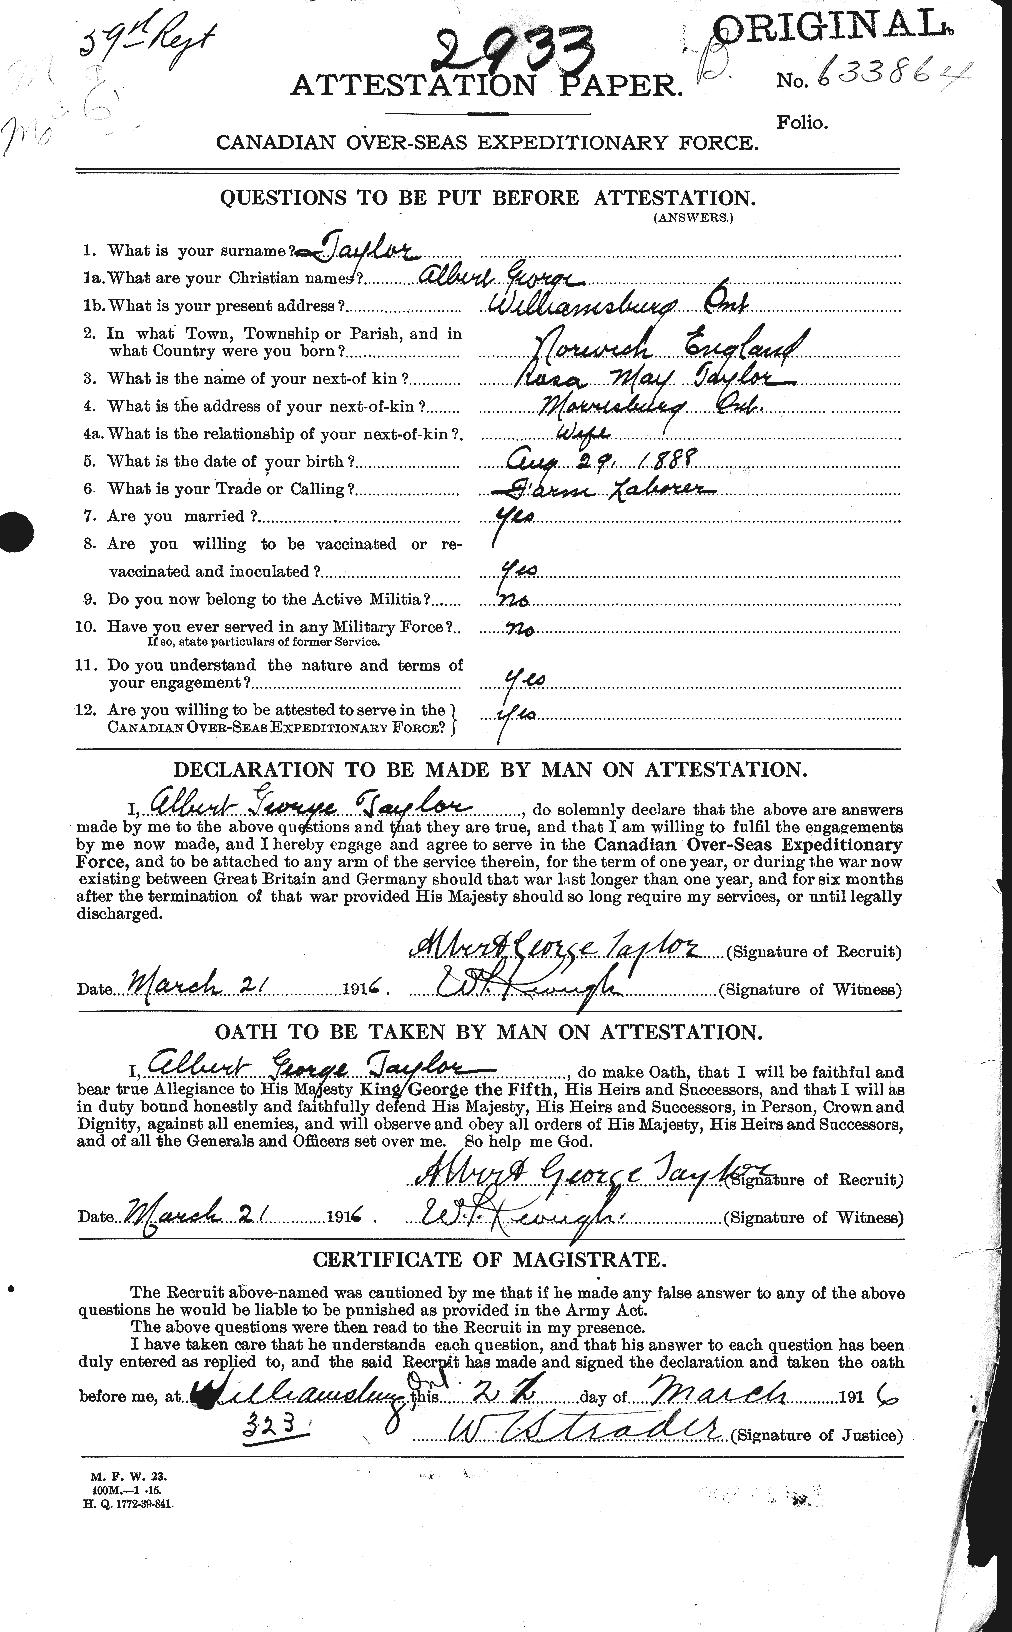 Dossiers du Personnel de la Première Guerre mondiale - CEC 626116a